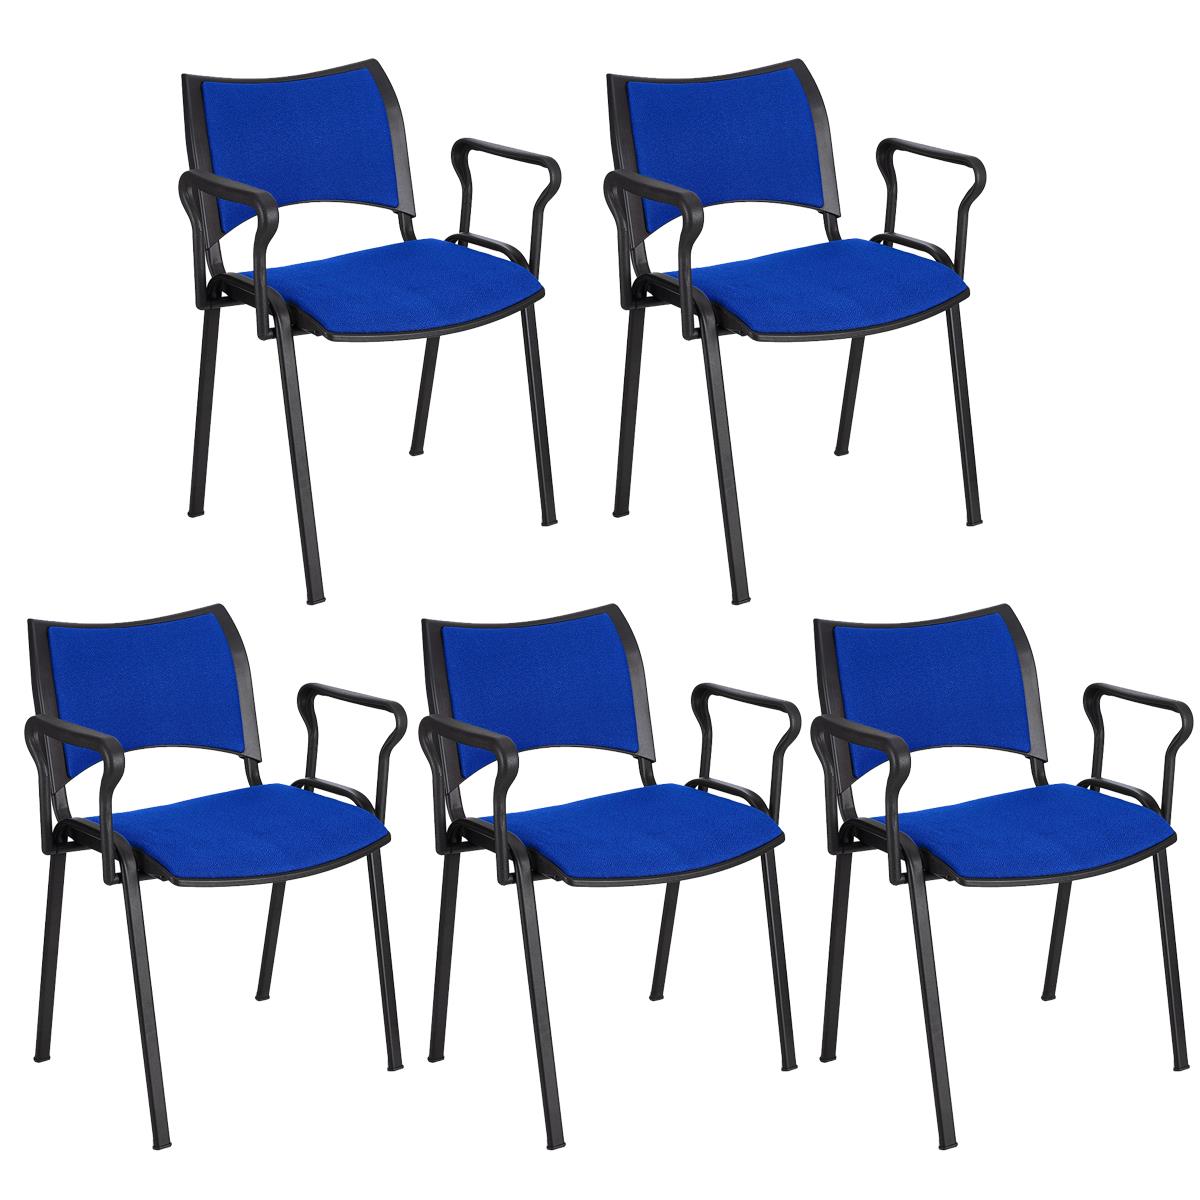 Lote 5 Cadeiras de Visita ROMEL COM BRAÇOS, Empilhável, Pernas Pretas, Em Pano, Azul